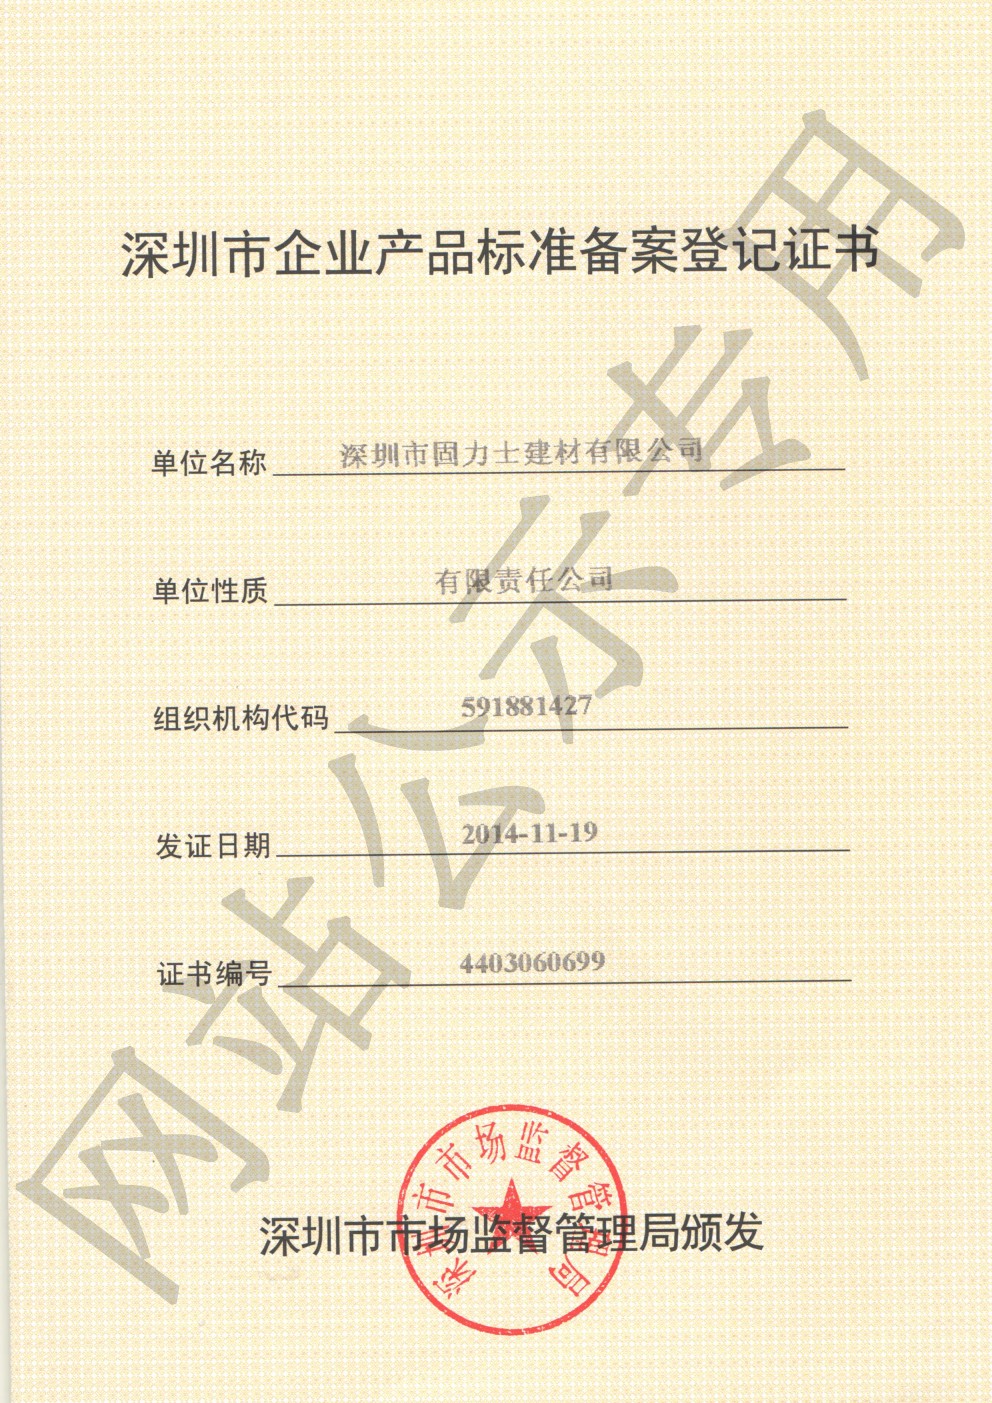 洪梅镇企业产品标准登记证书